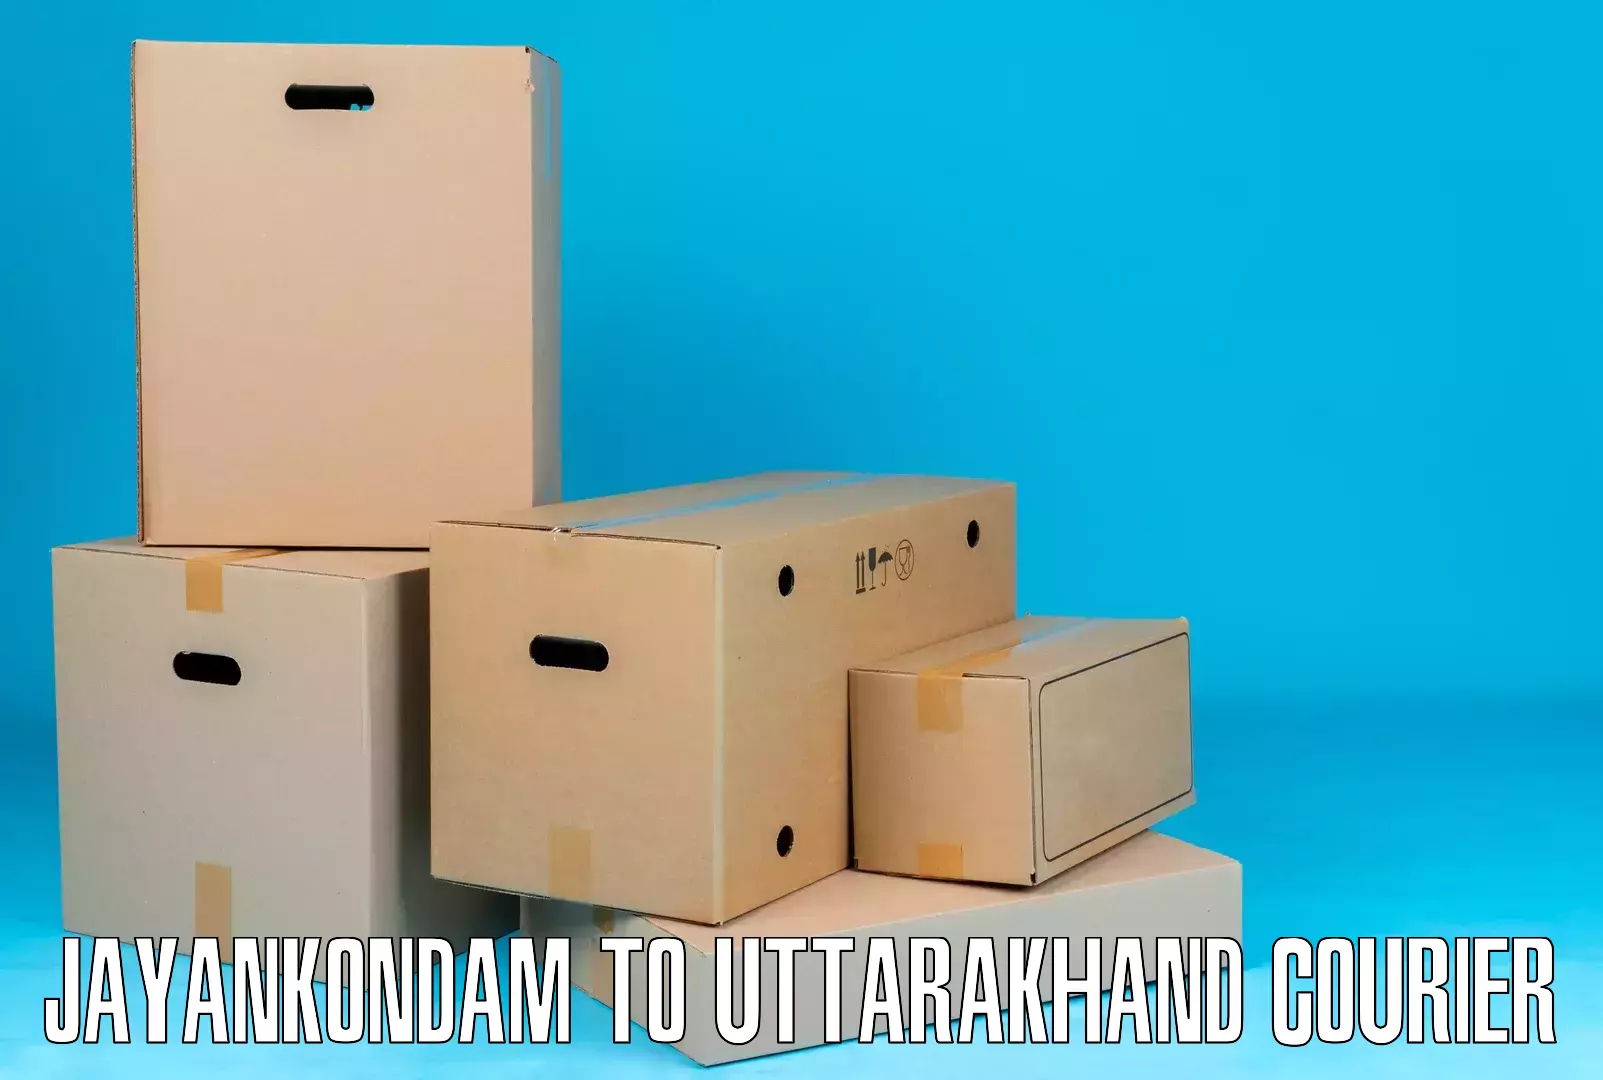 Tailored shipping plans Jayankondam to Haldwani